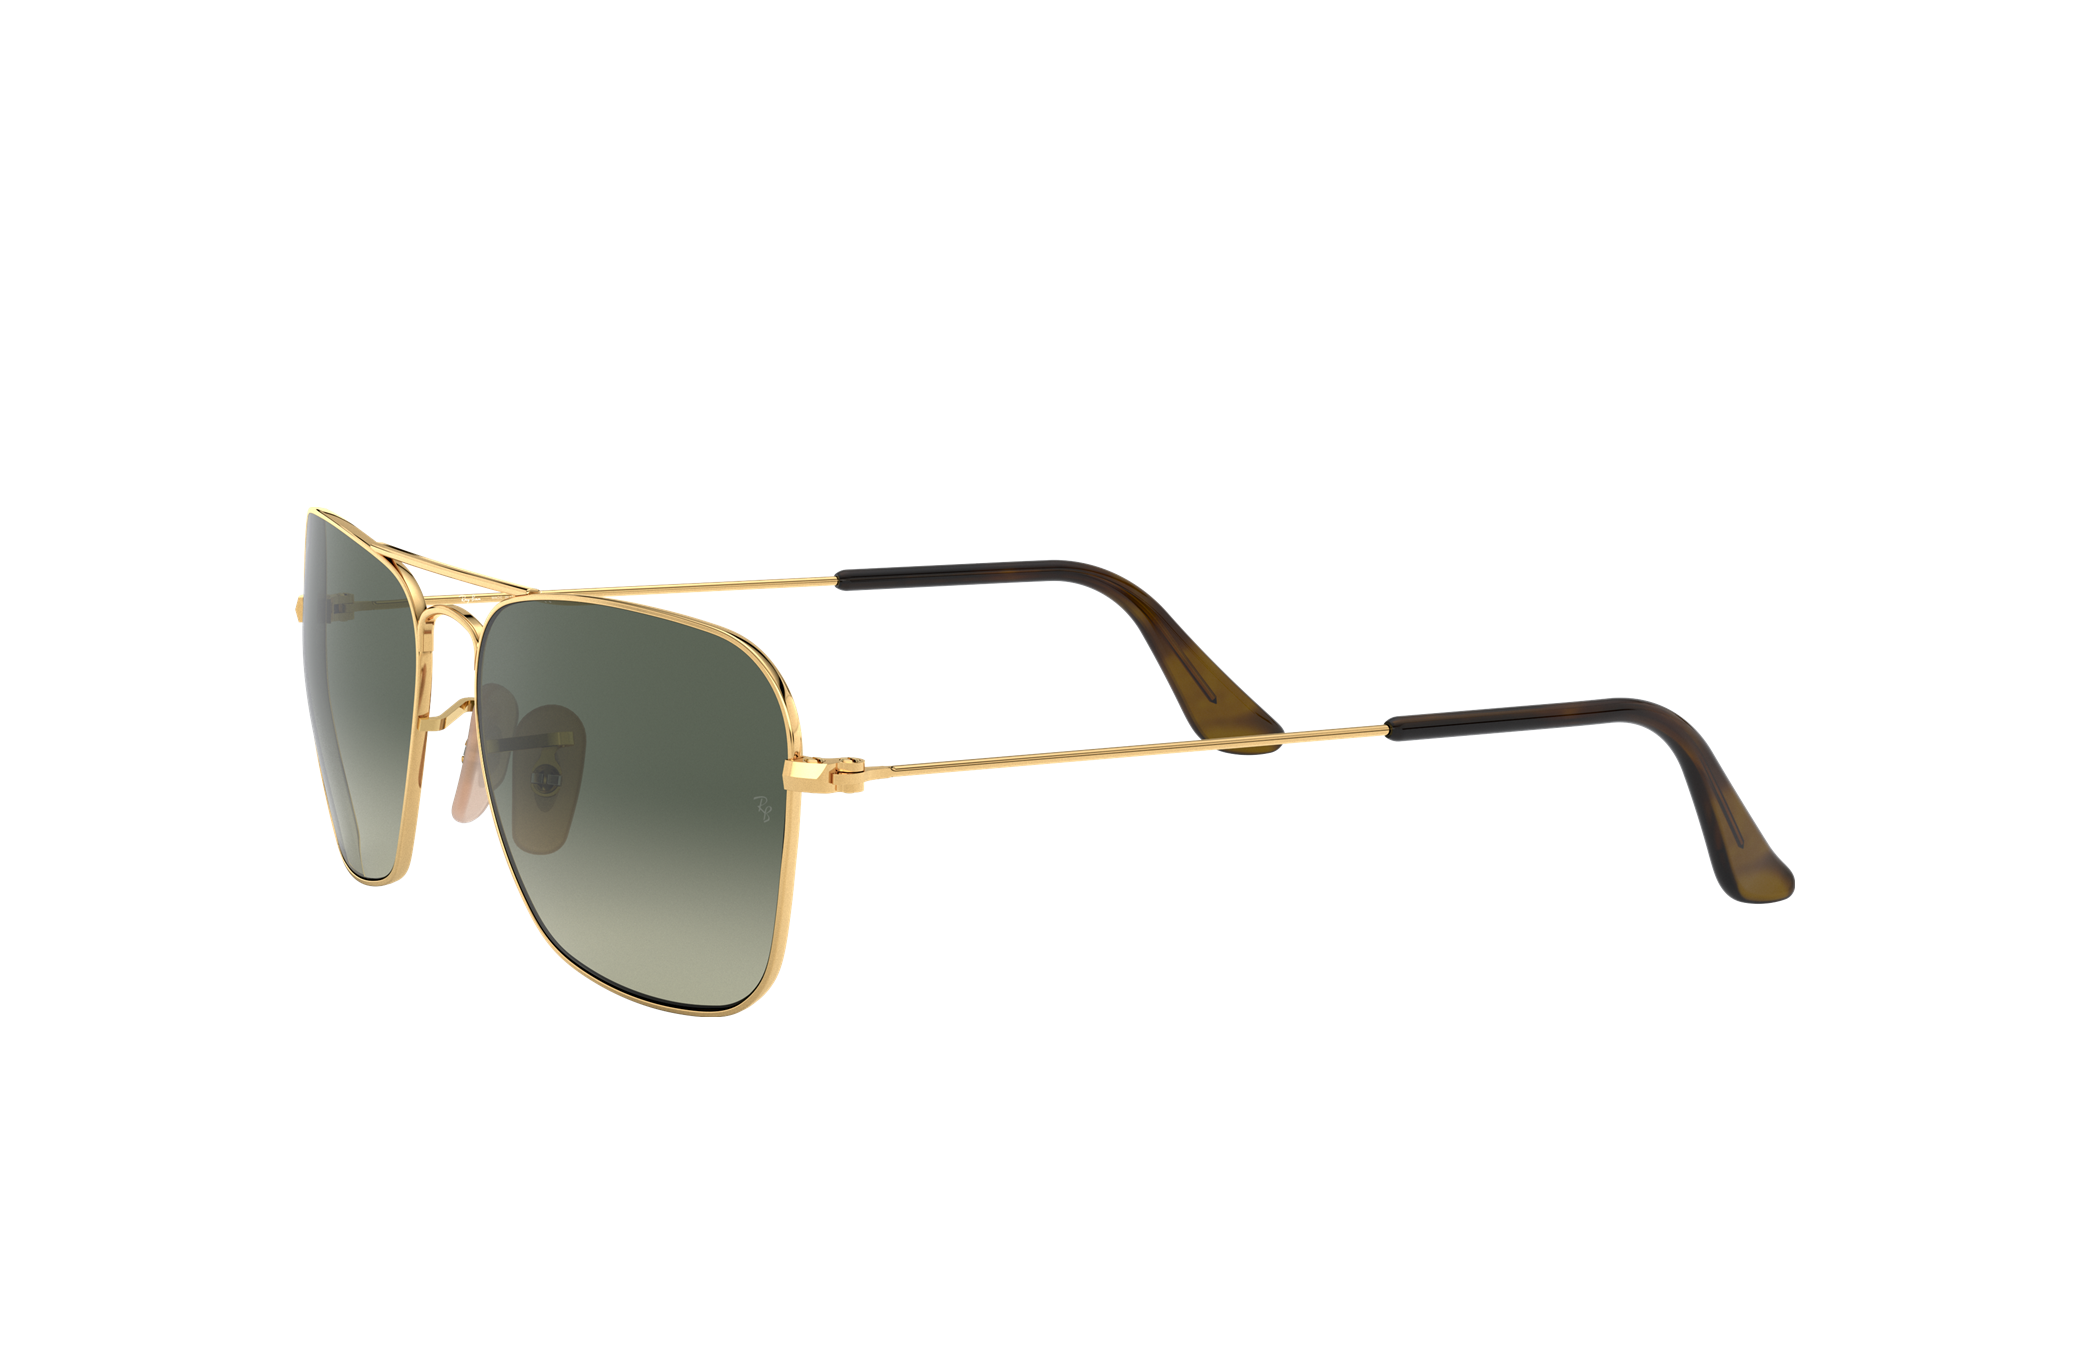 Gray Leggerissimo Caravan Sunglasses Ssense Uomo Accessori Occhiali da sole 